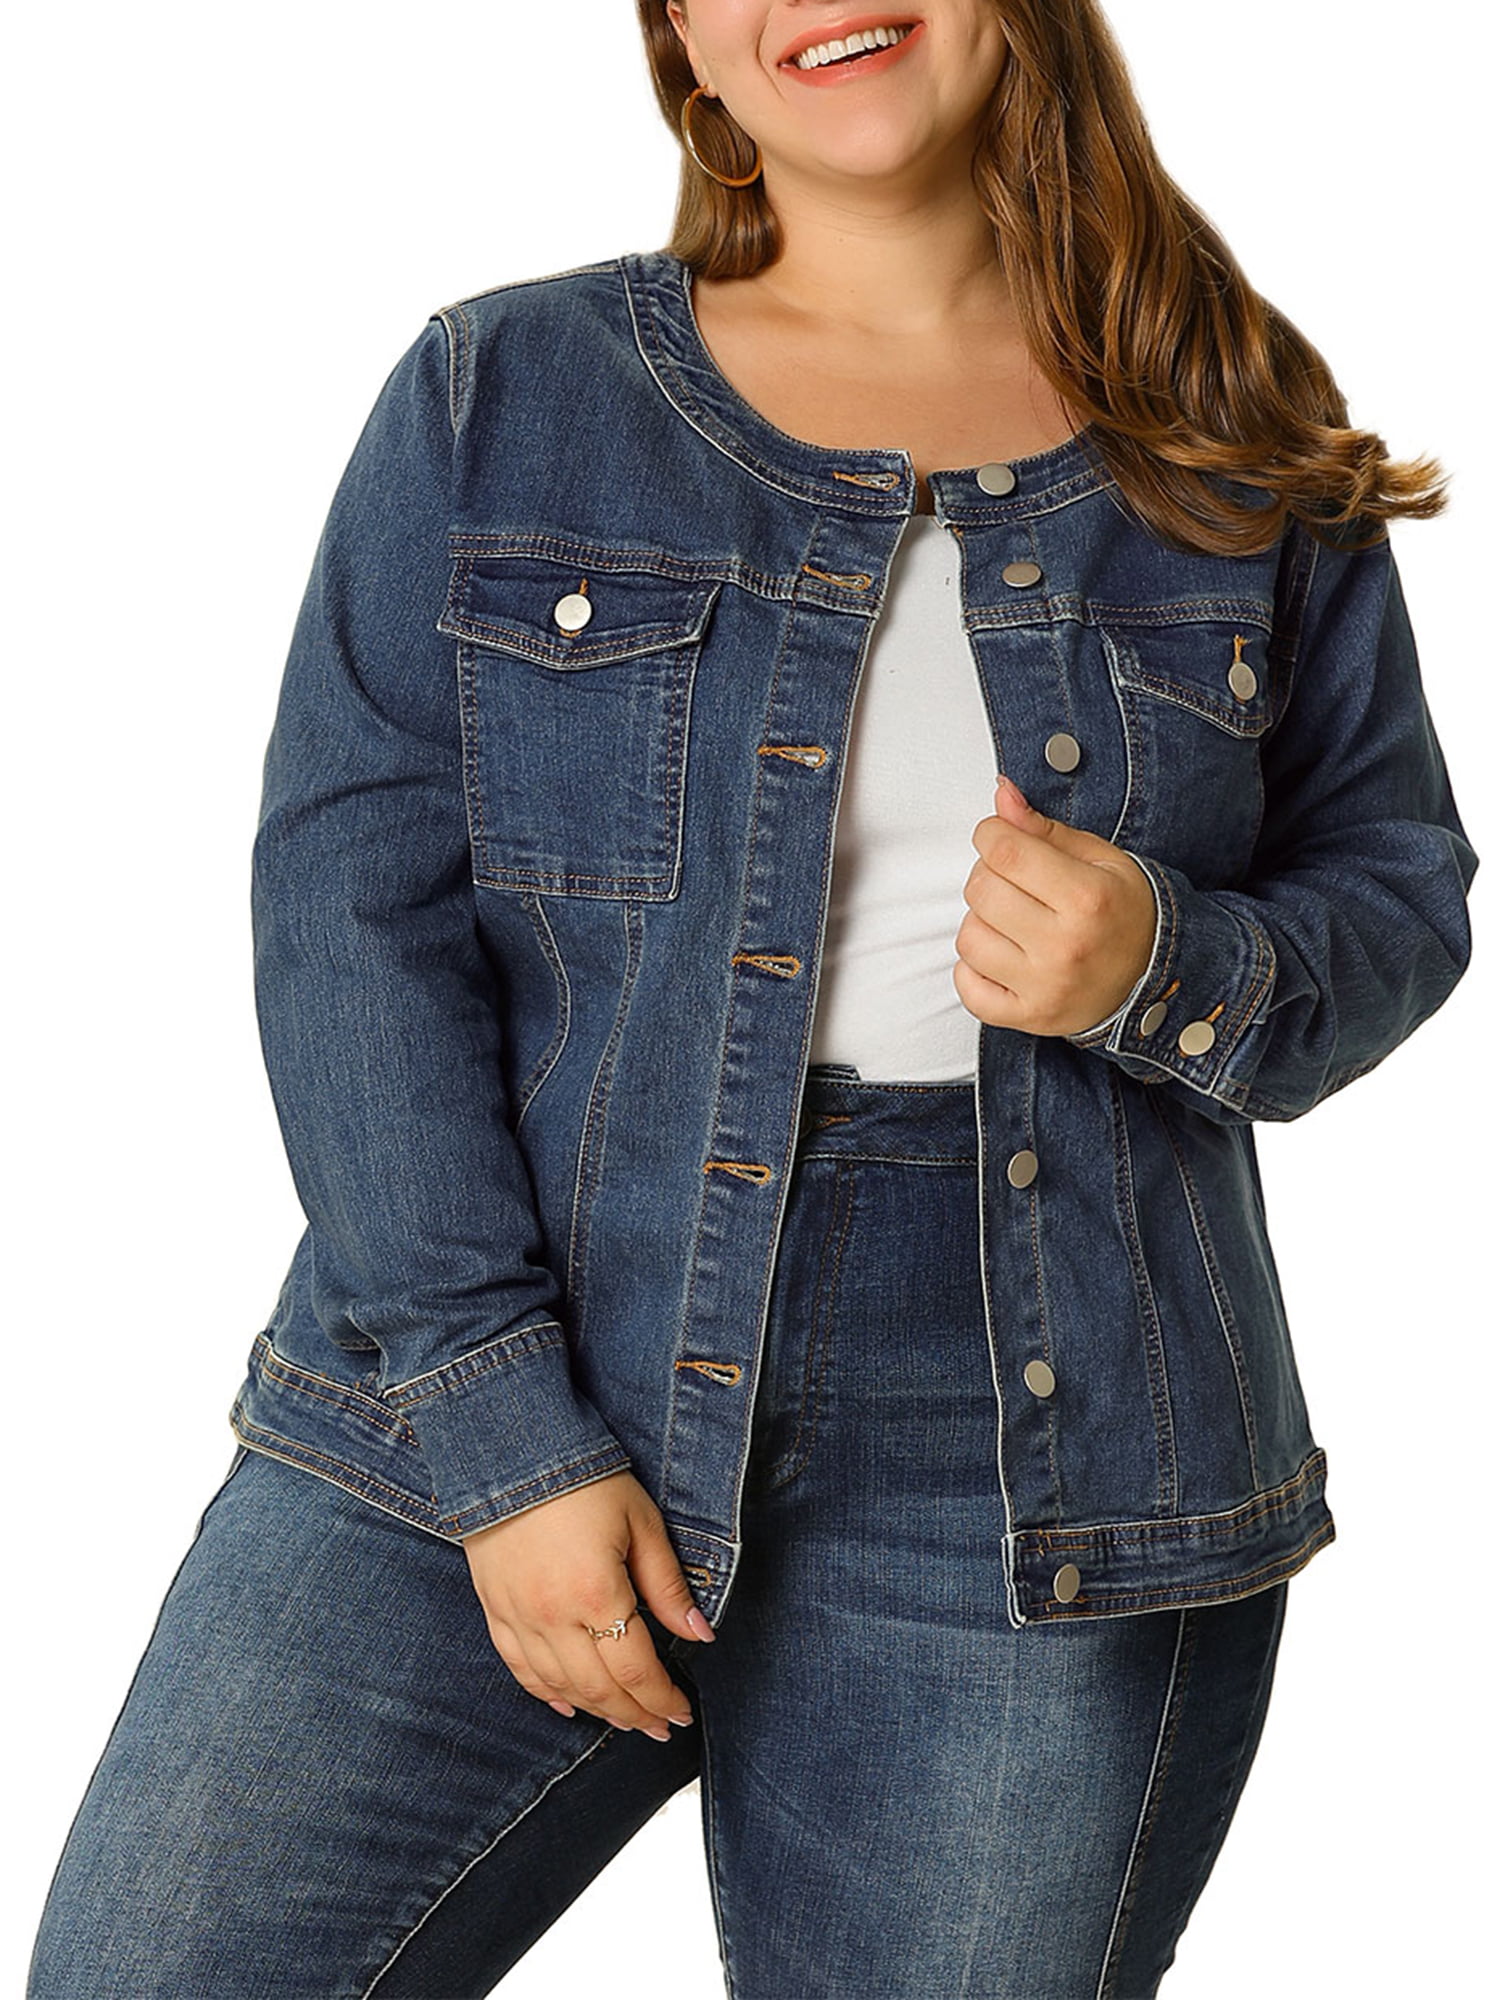 Unique Bargains - Women's Plus Size Long Sleeve Collarless Denim Jacket ...